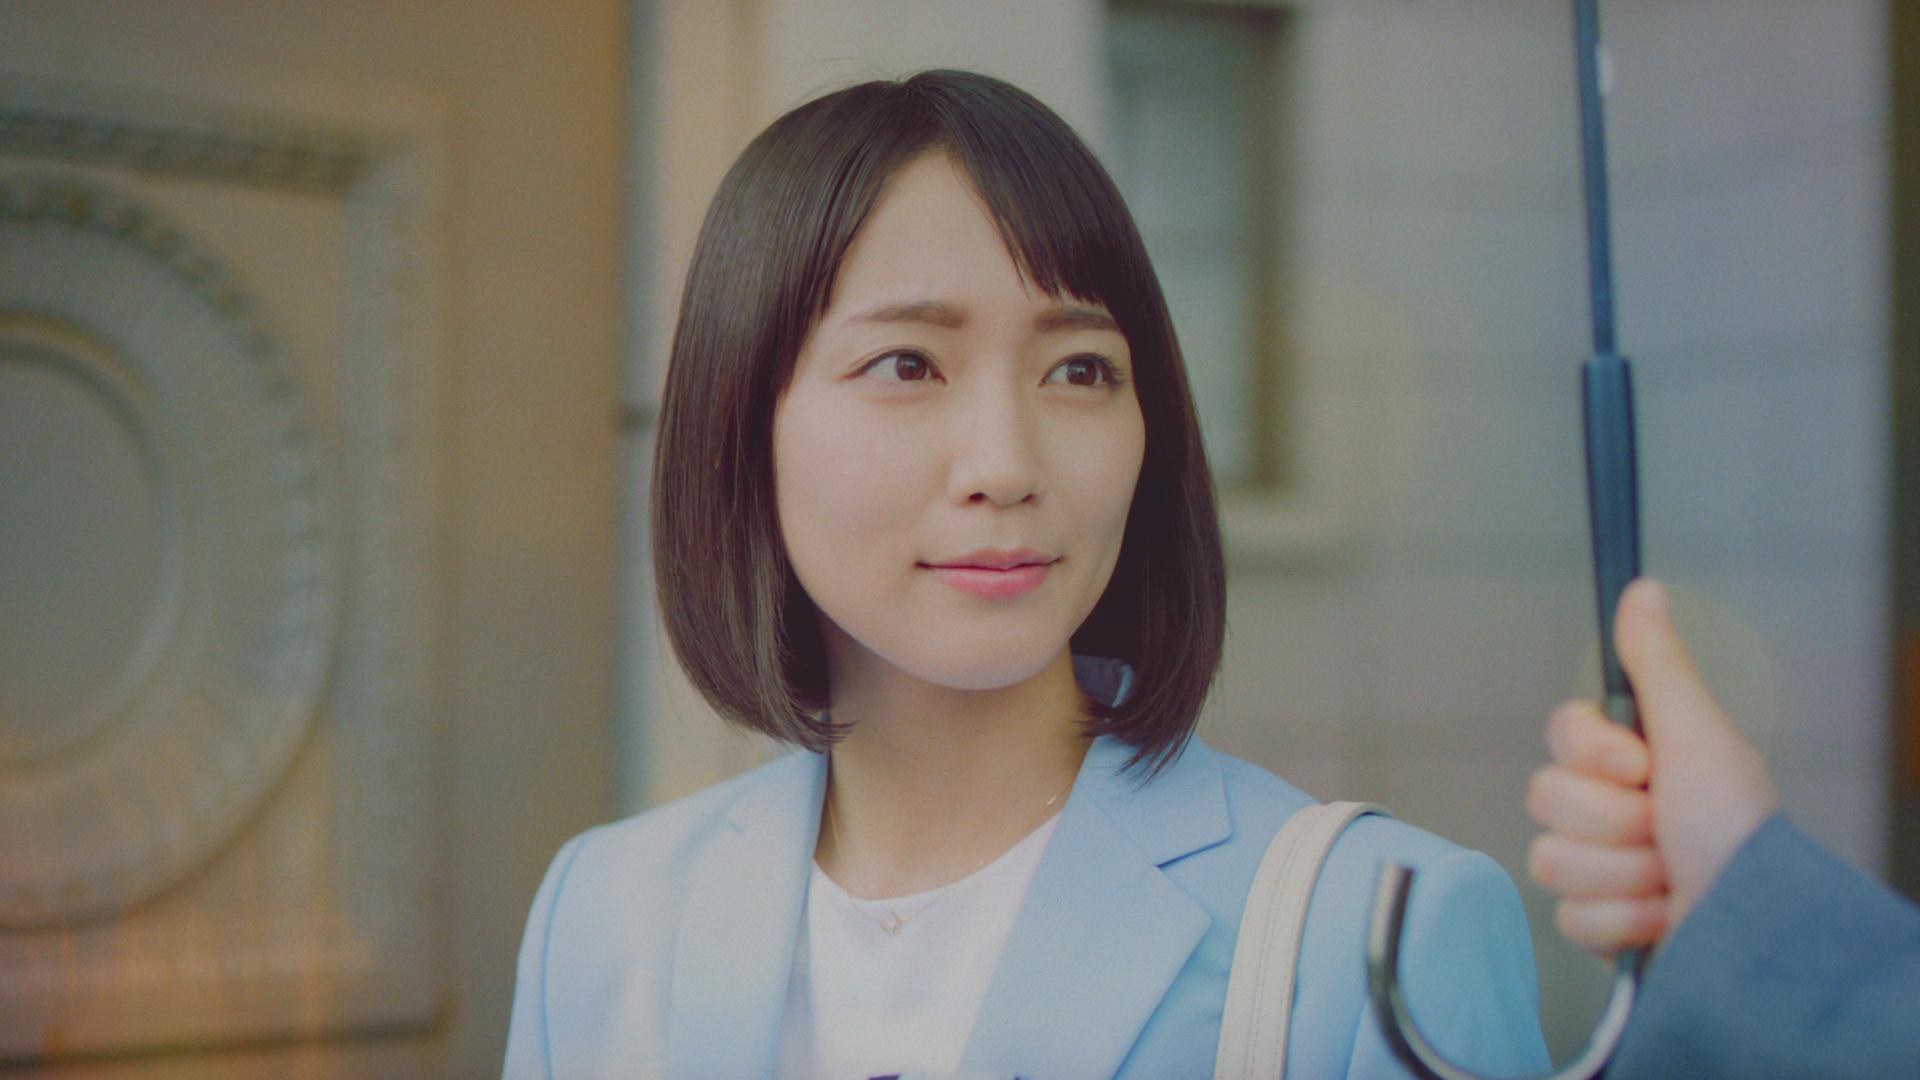 いま、人気急上昇中の女優・吉岡里帆さんの新CMが公開 ピュアな吉岡さんの“色々”な表情と美しい色素材の融合に注目